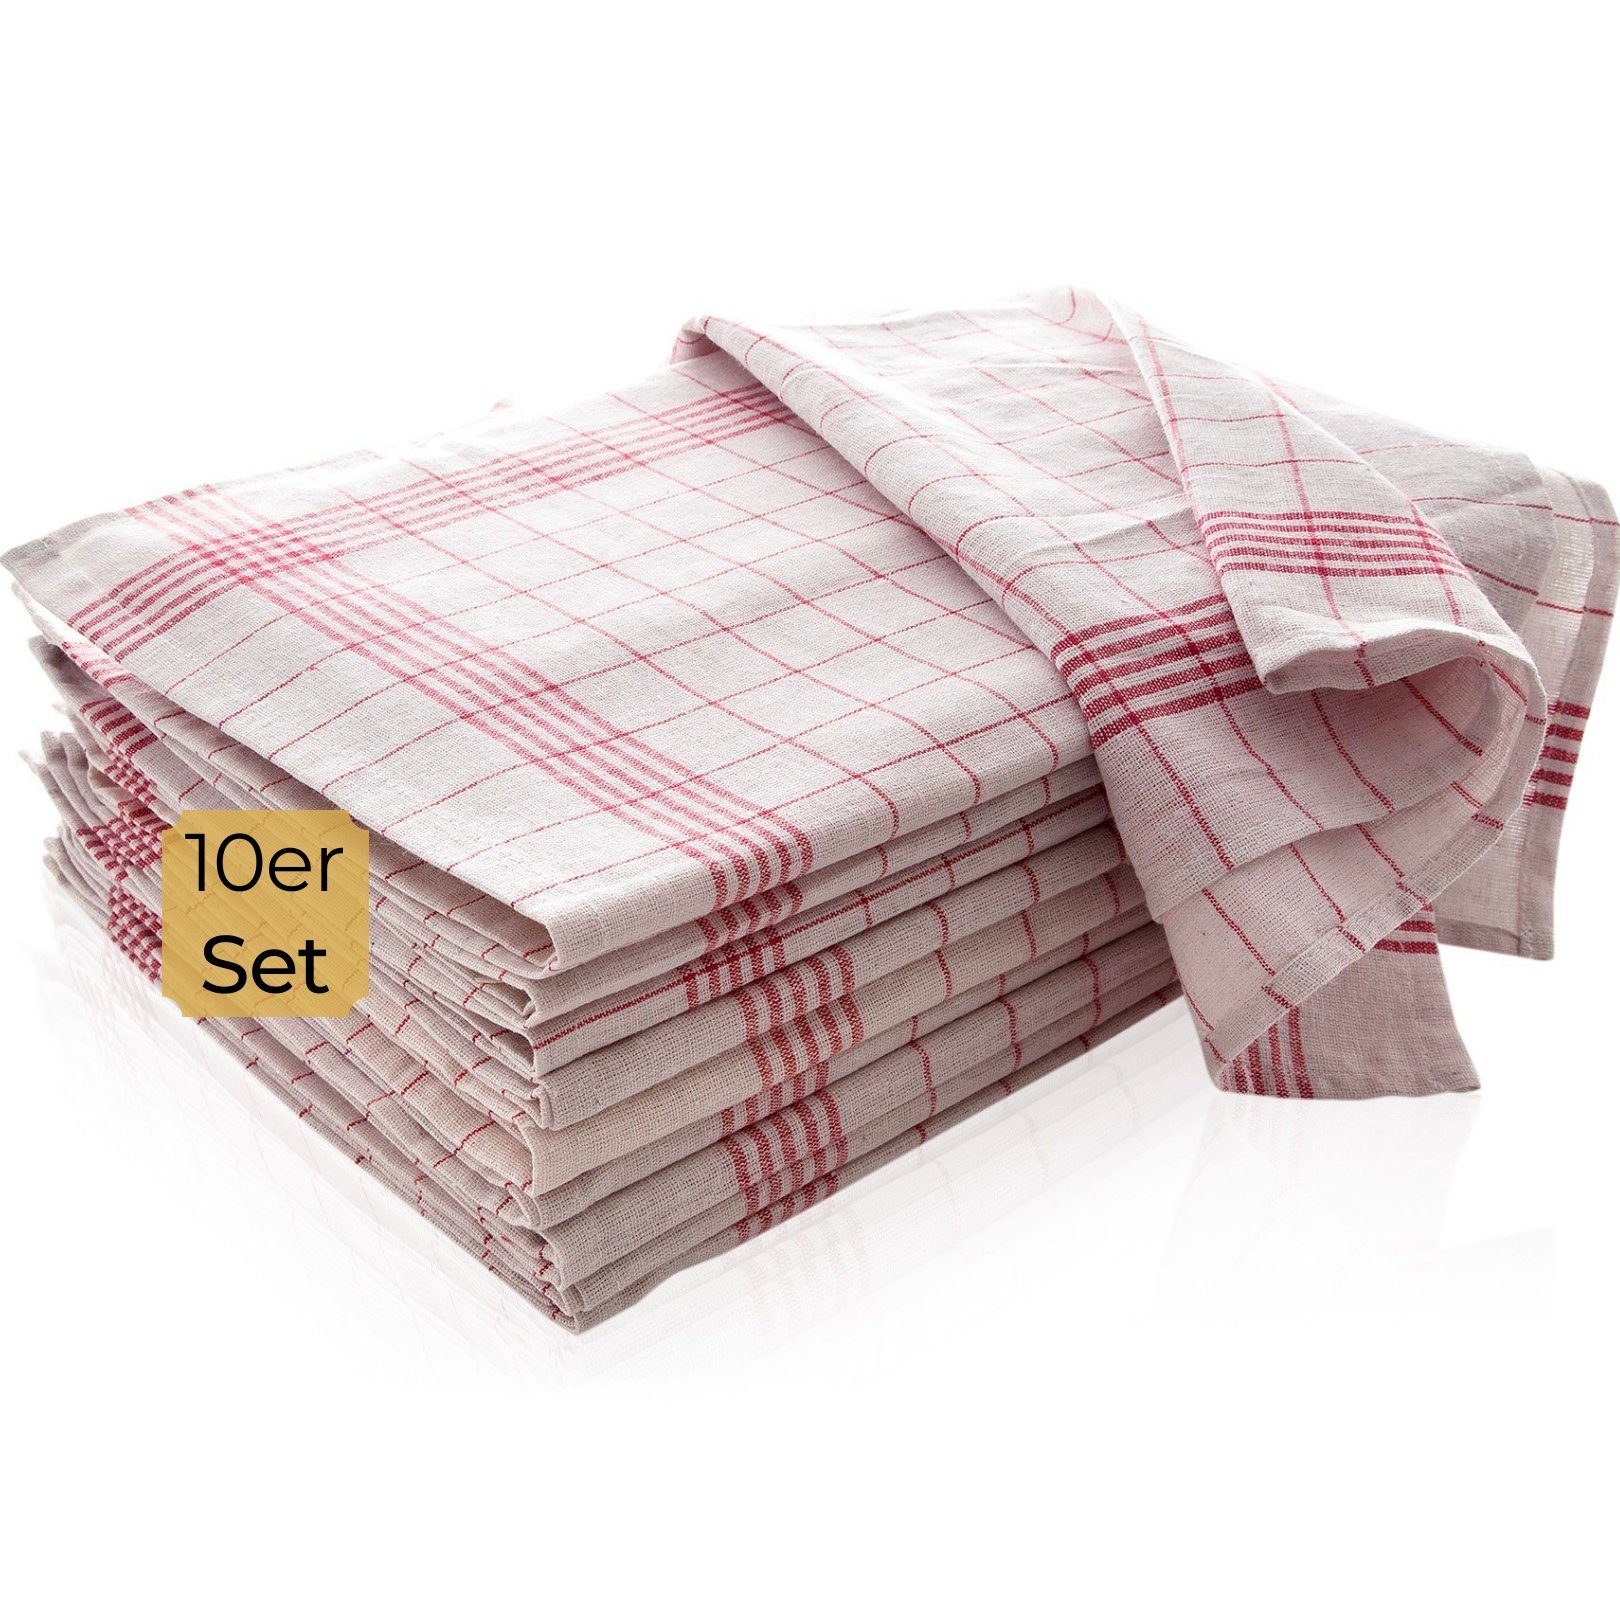 Hometex Premium Textiles Geschirrtuch Trockentuch, Allzweck-Tücher kariert 50x70 cm aus 100% Baumwolle, Premium-Qualität - Vielfältig einsetzbares 10er Set Rot-Weiß